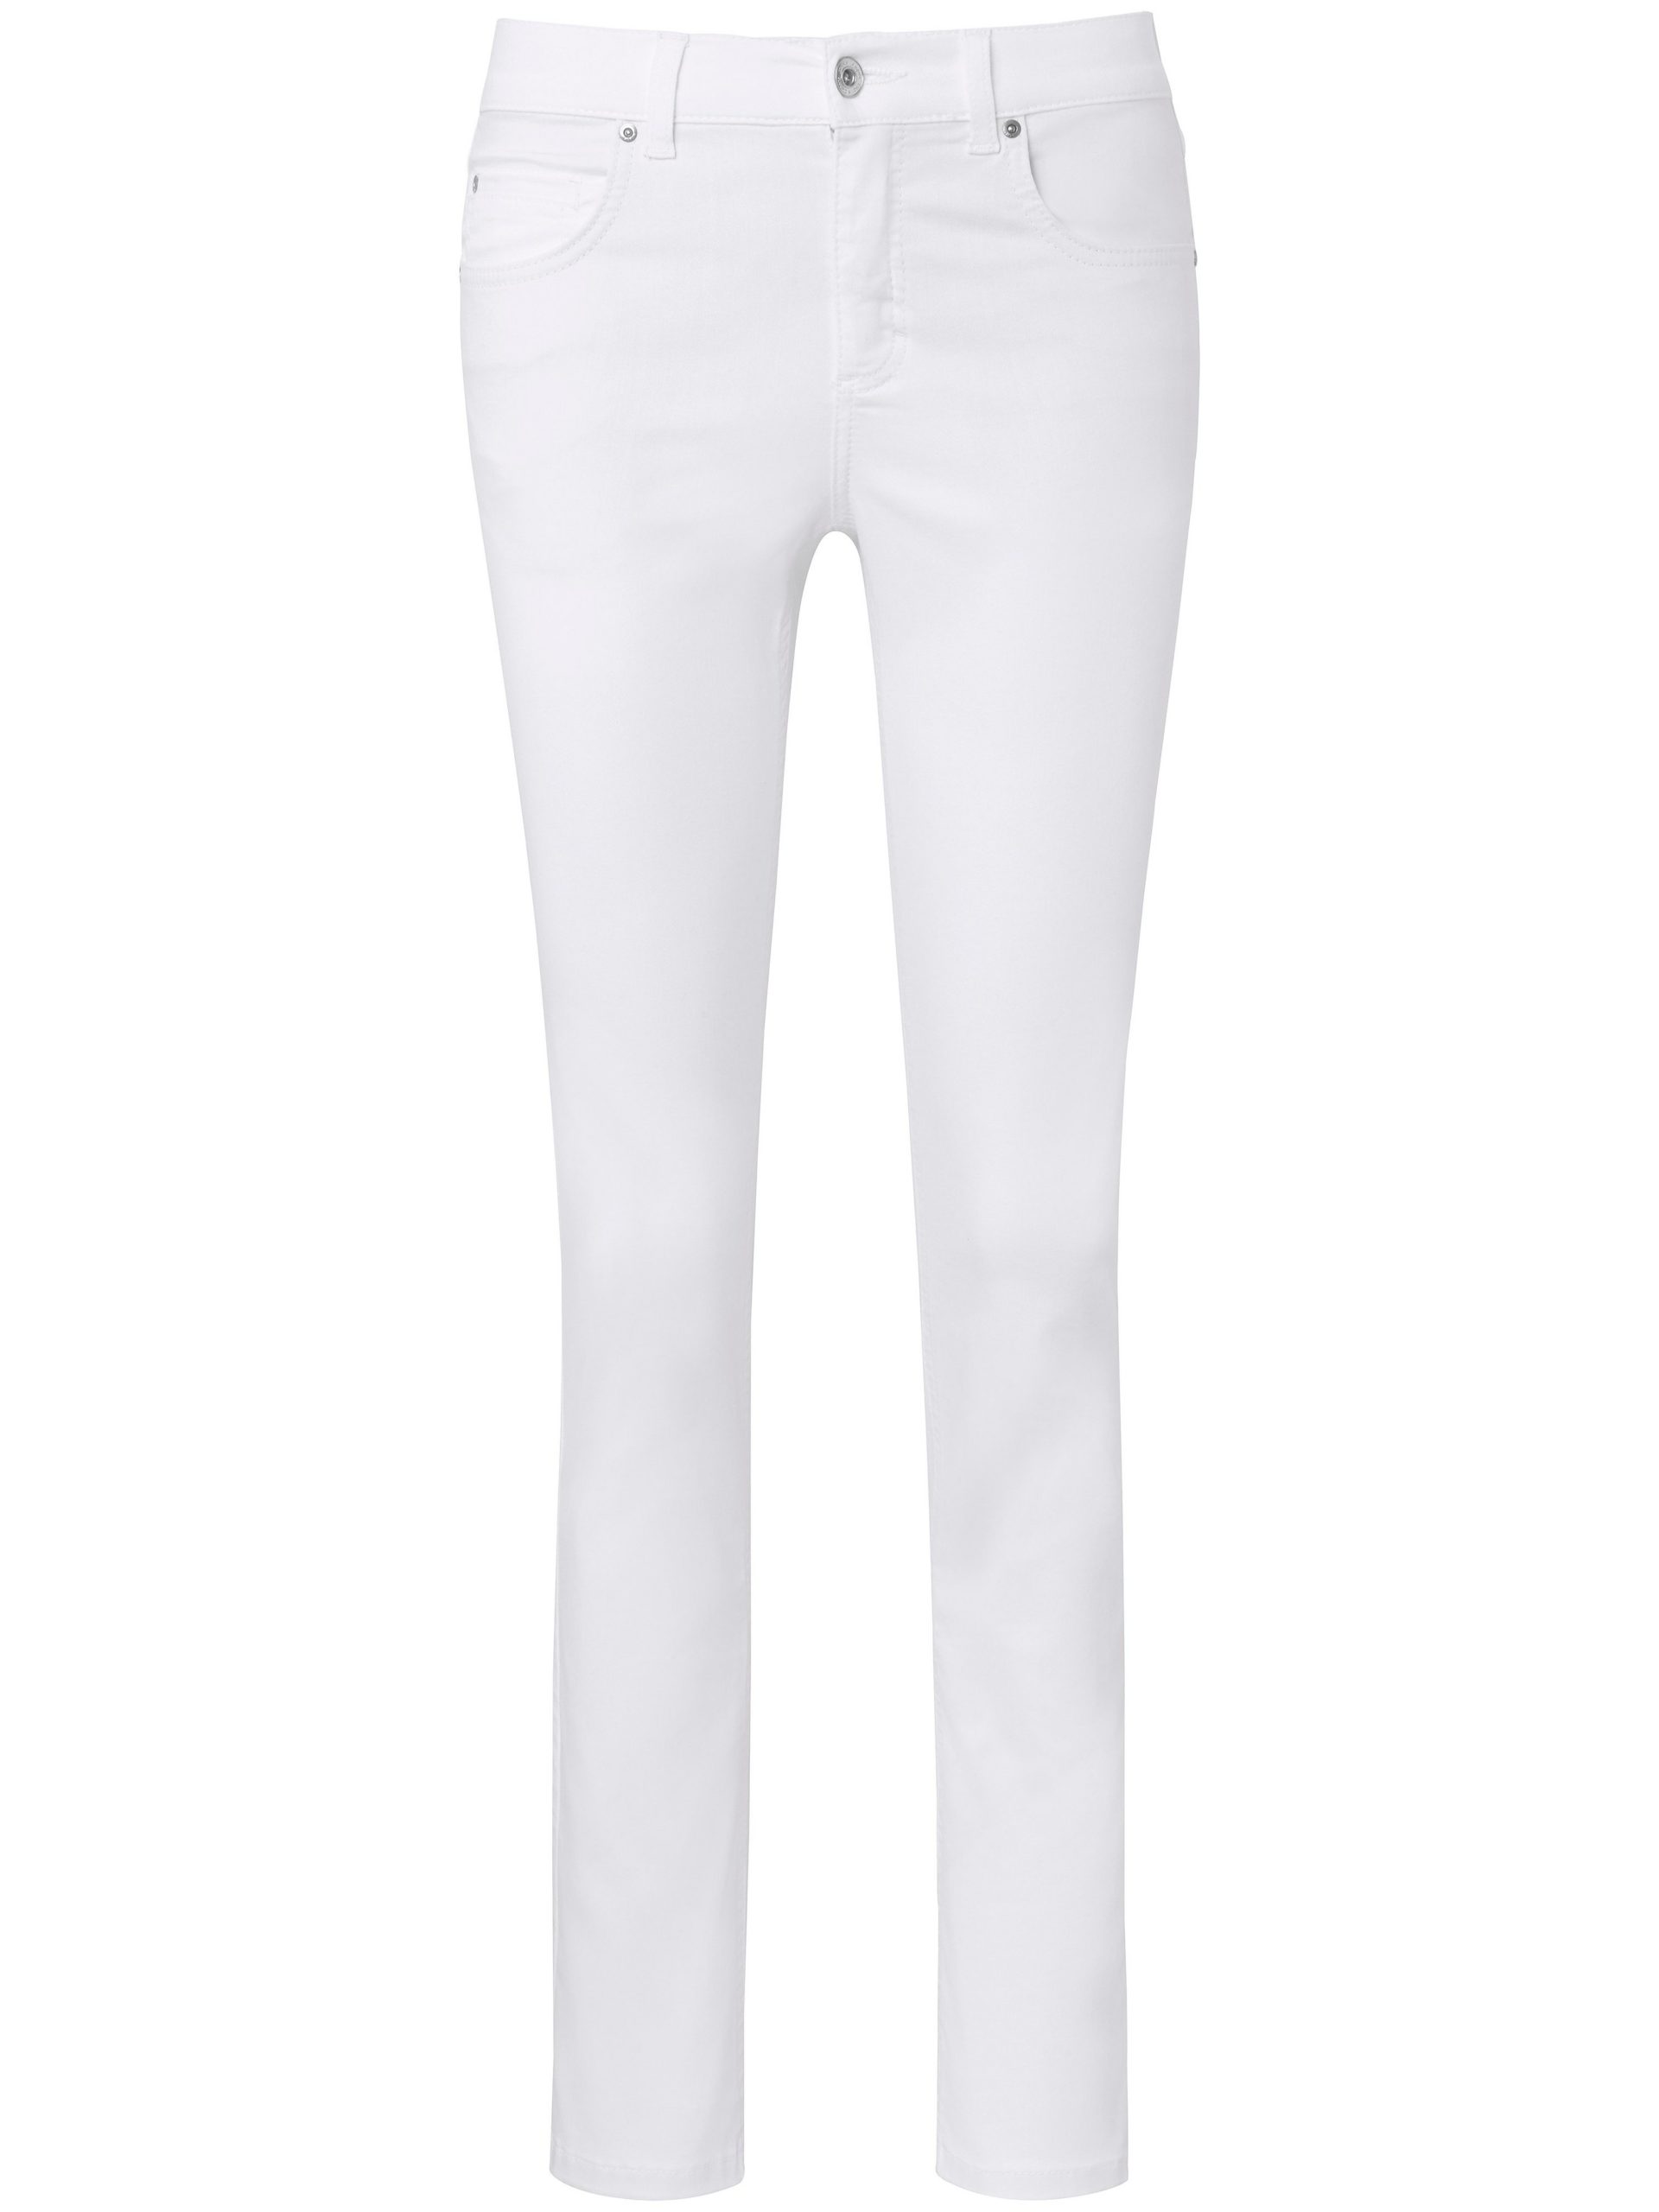 Jeans model Ornella met iets kortere pijpen Van ANGELS wit Kopen